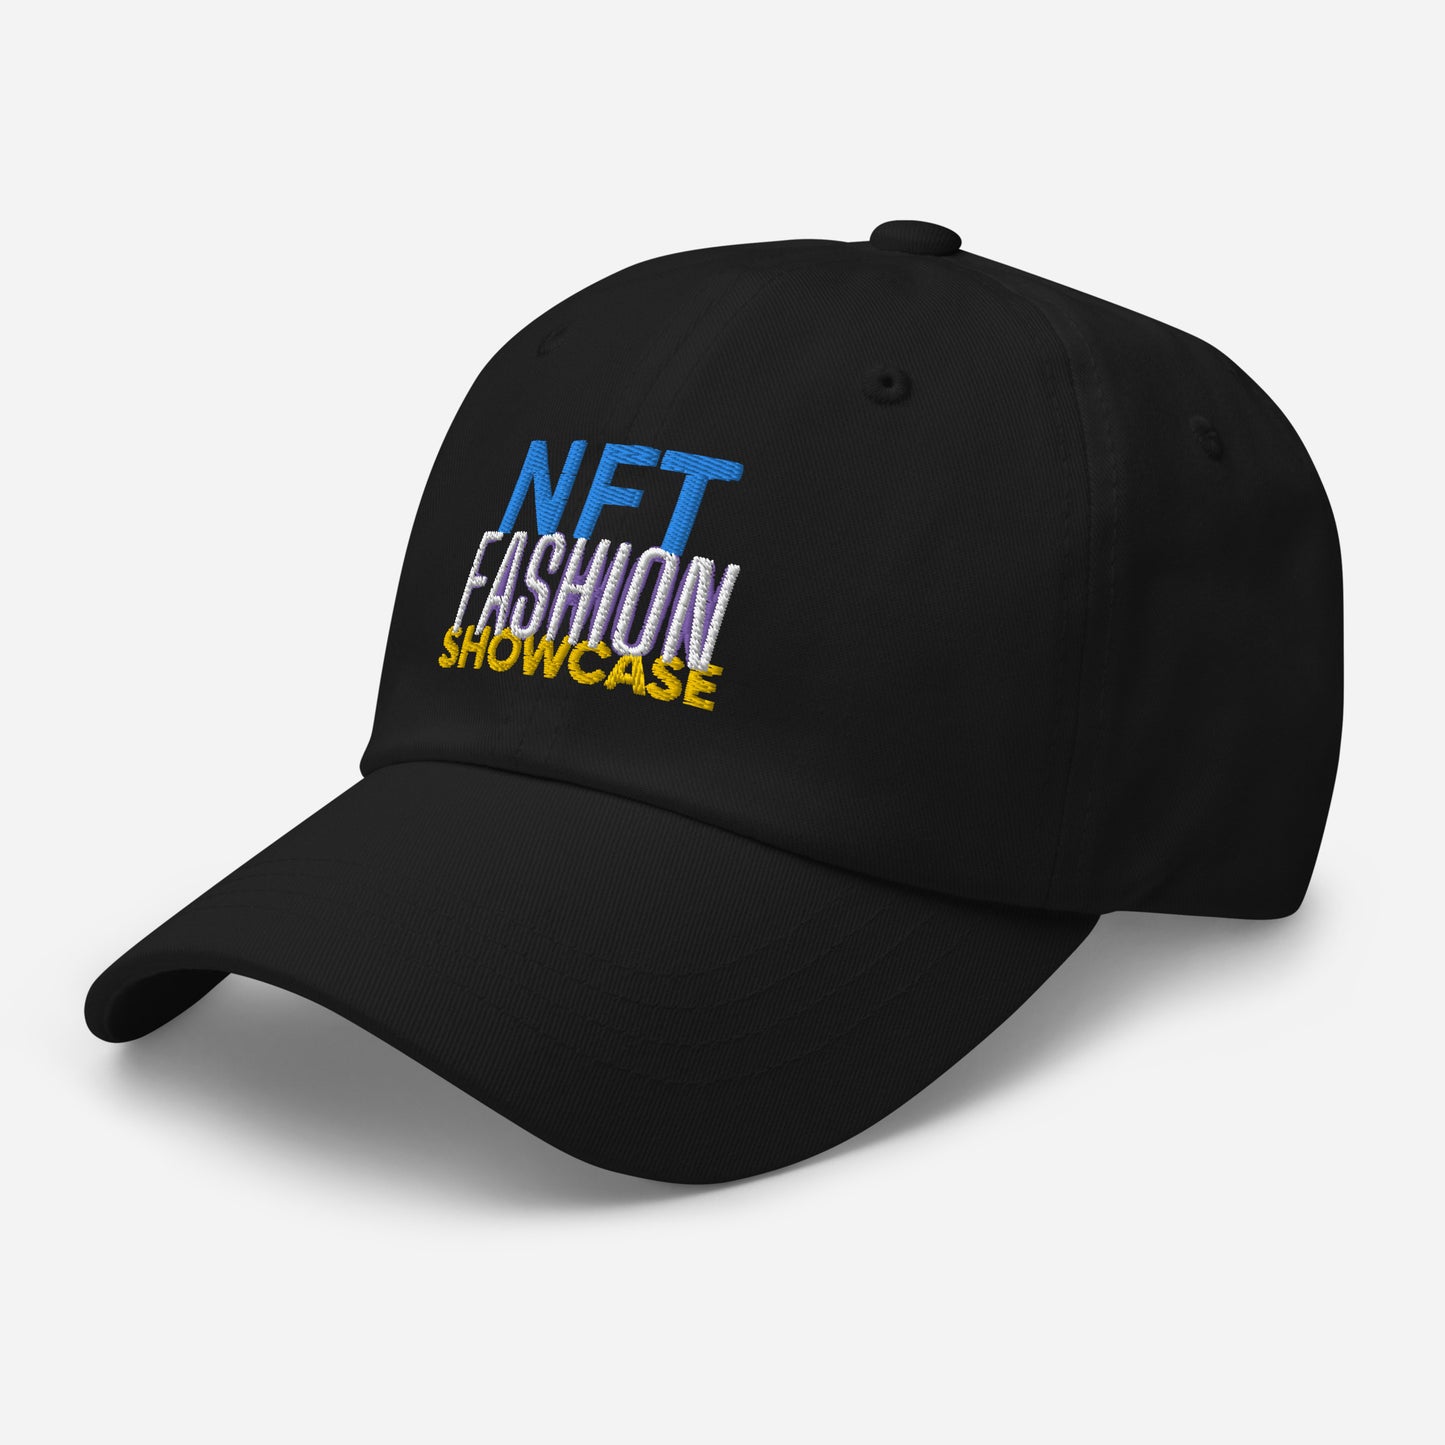 NFT Fashion Showcase Dad Hat